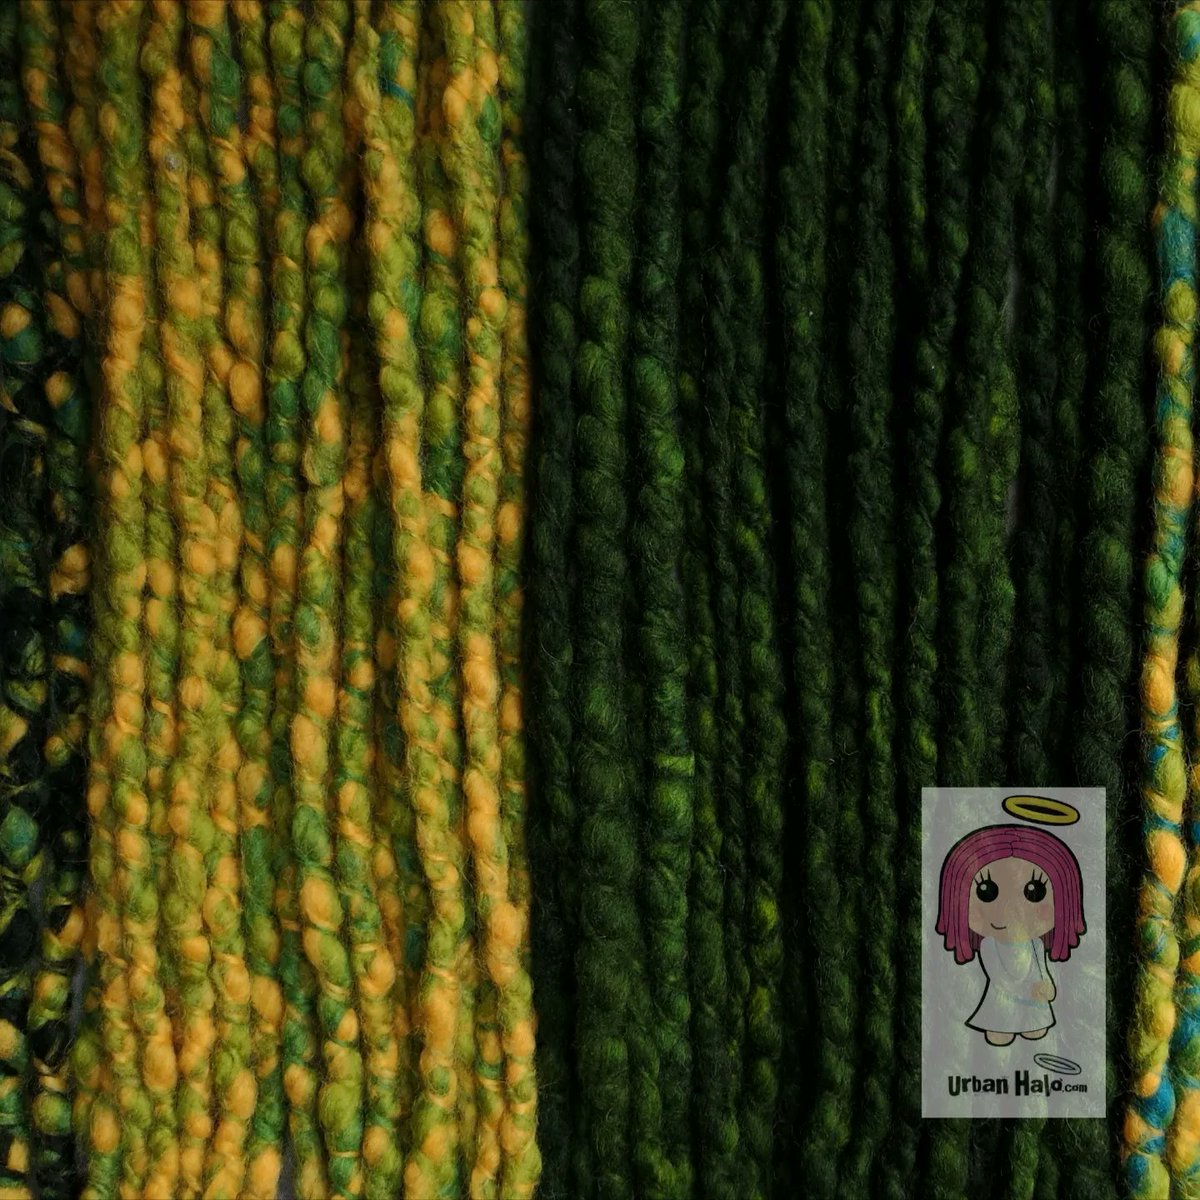 Tropical multicoloured wool dreadfalls I made in a special high-textured style. 💚💛💙😇

#urbanhalouk #dreadlocks #dreads #wooldreadlocks #wooldreads #greendreads #yellowdreads #ukdreads #ukdreadlocks #dedreads #customdreads #mermaidhair #dreadlove #dreadgoals #fantasyhair